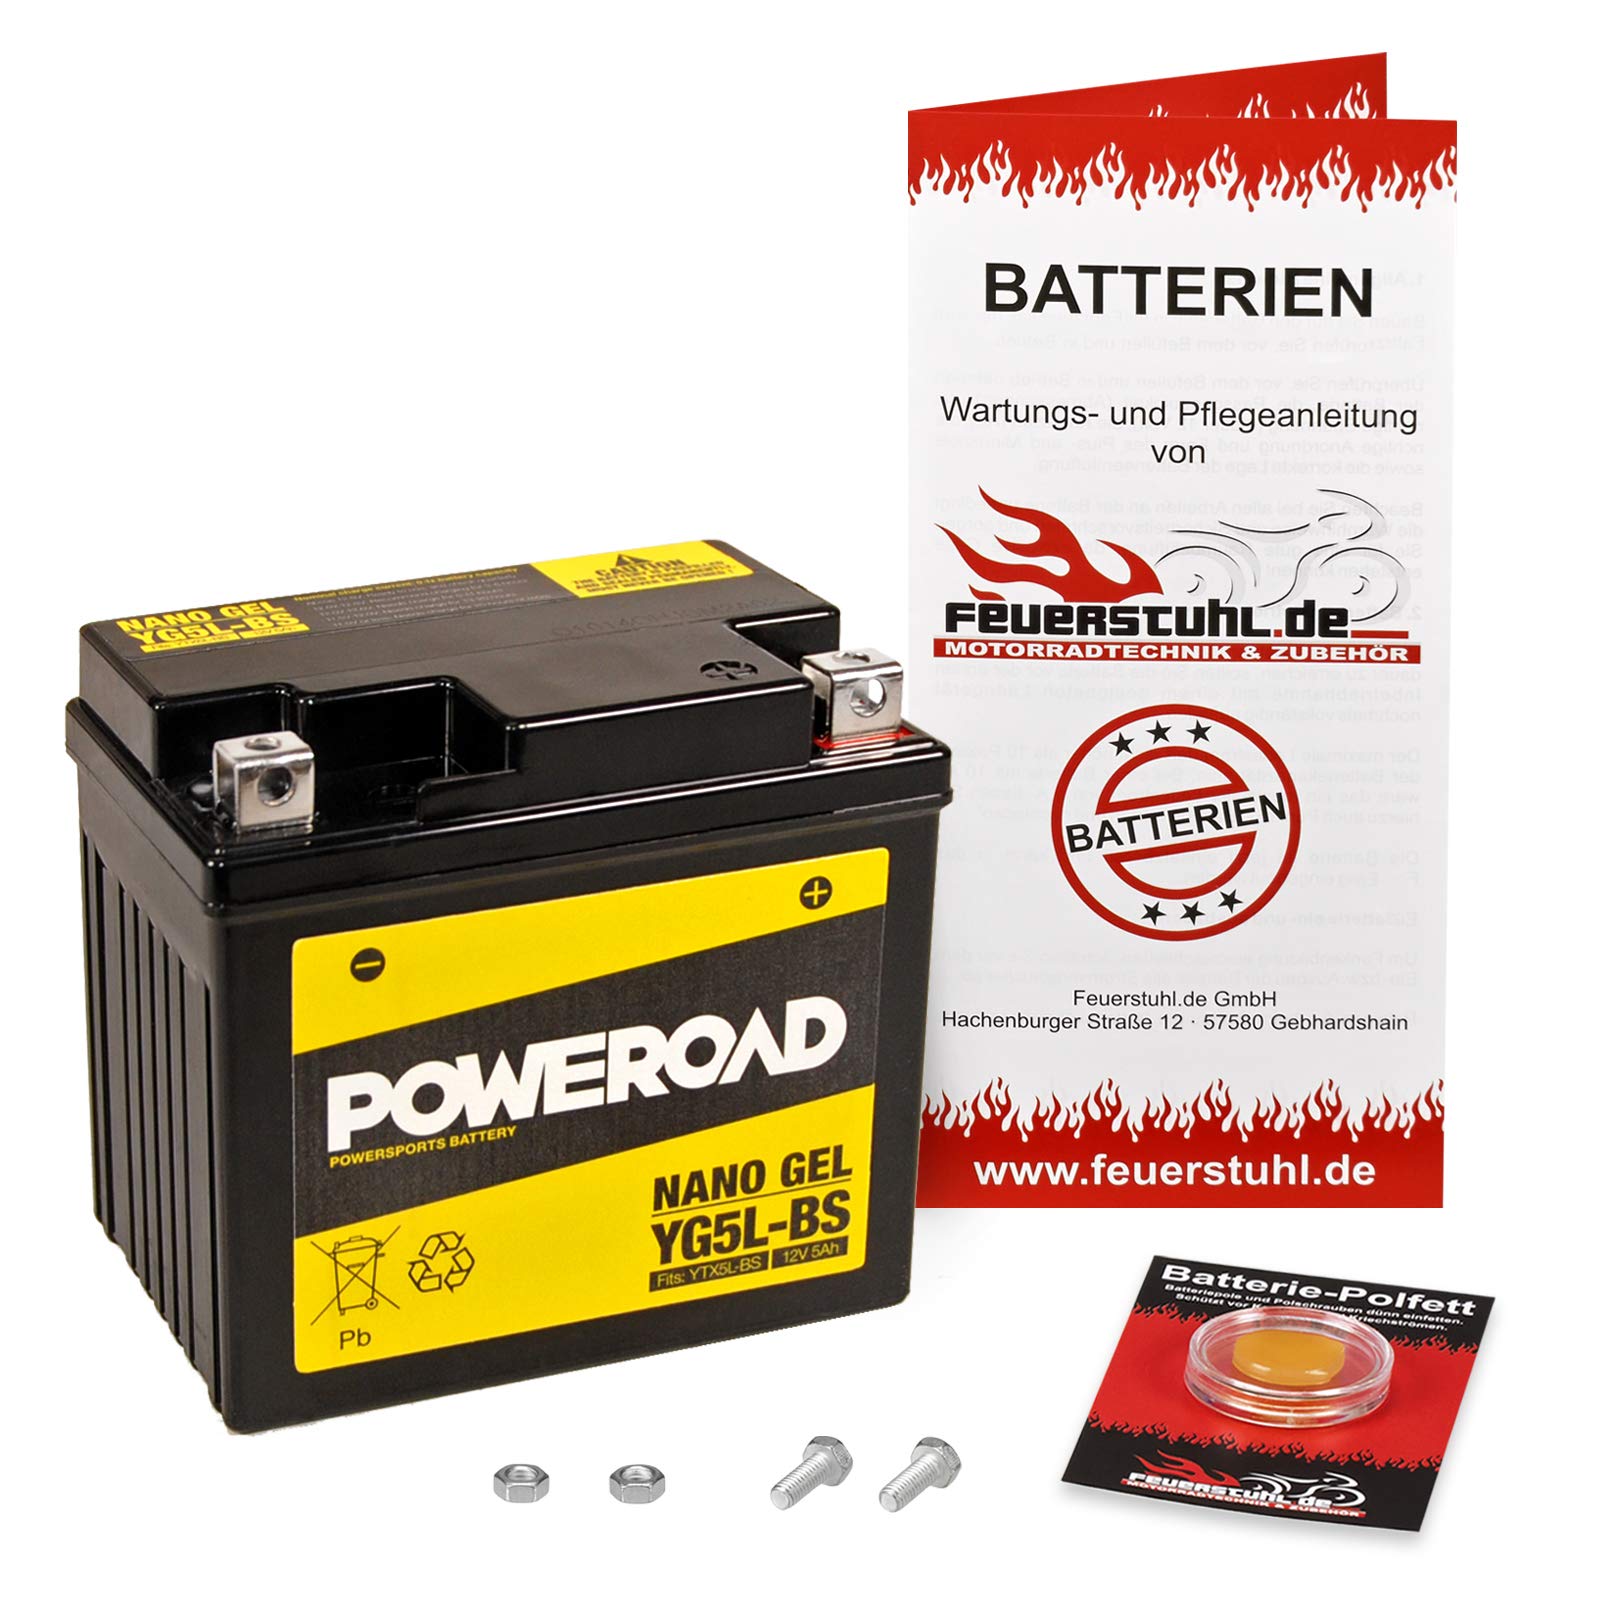 Gel-Batterie NSR 125 R (JC22) wartungsfrei, einbaufertig, startklar, inkl. 7,50€ Pfand von Feuerstuhl.de GmbH